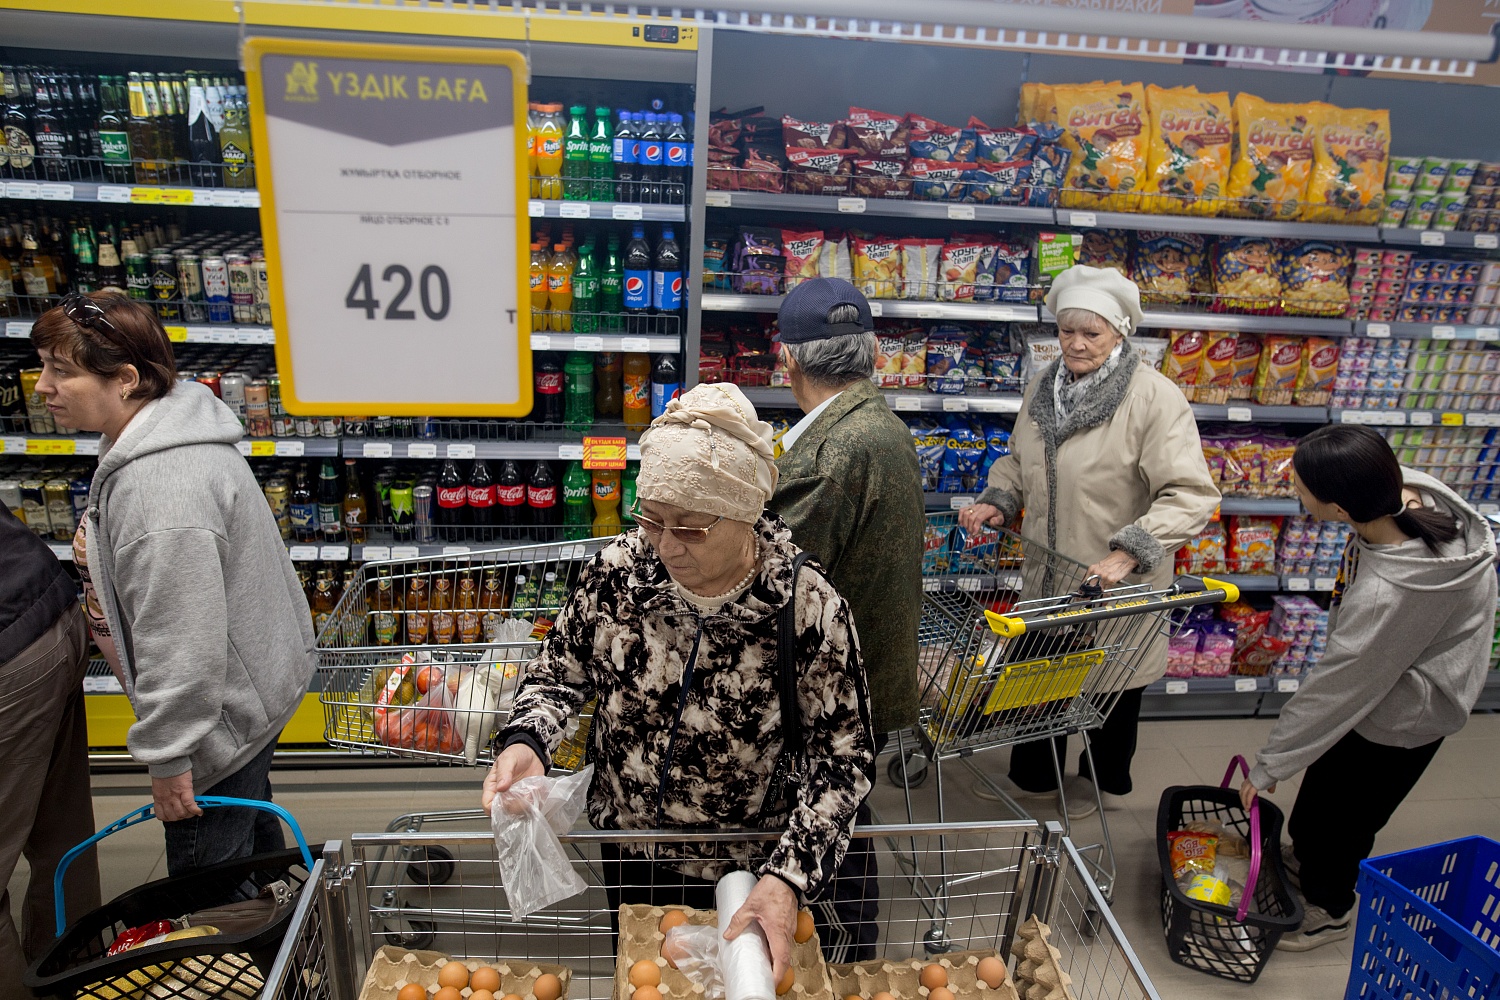 Открытие обновленного супермаркета "Анвар" в Авиагородке. г.Актобе.